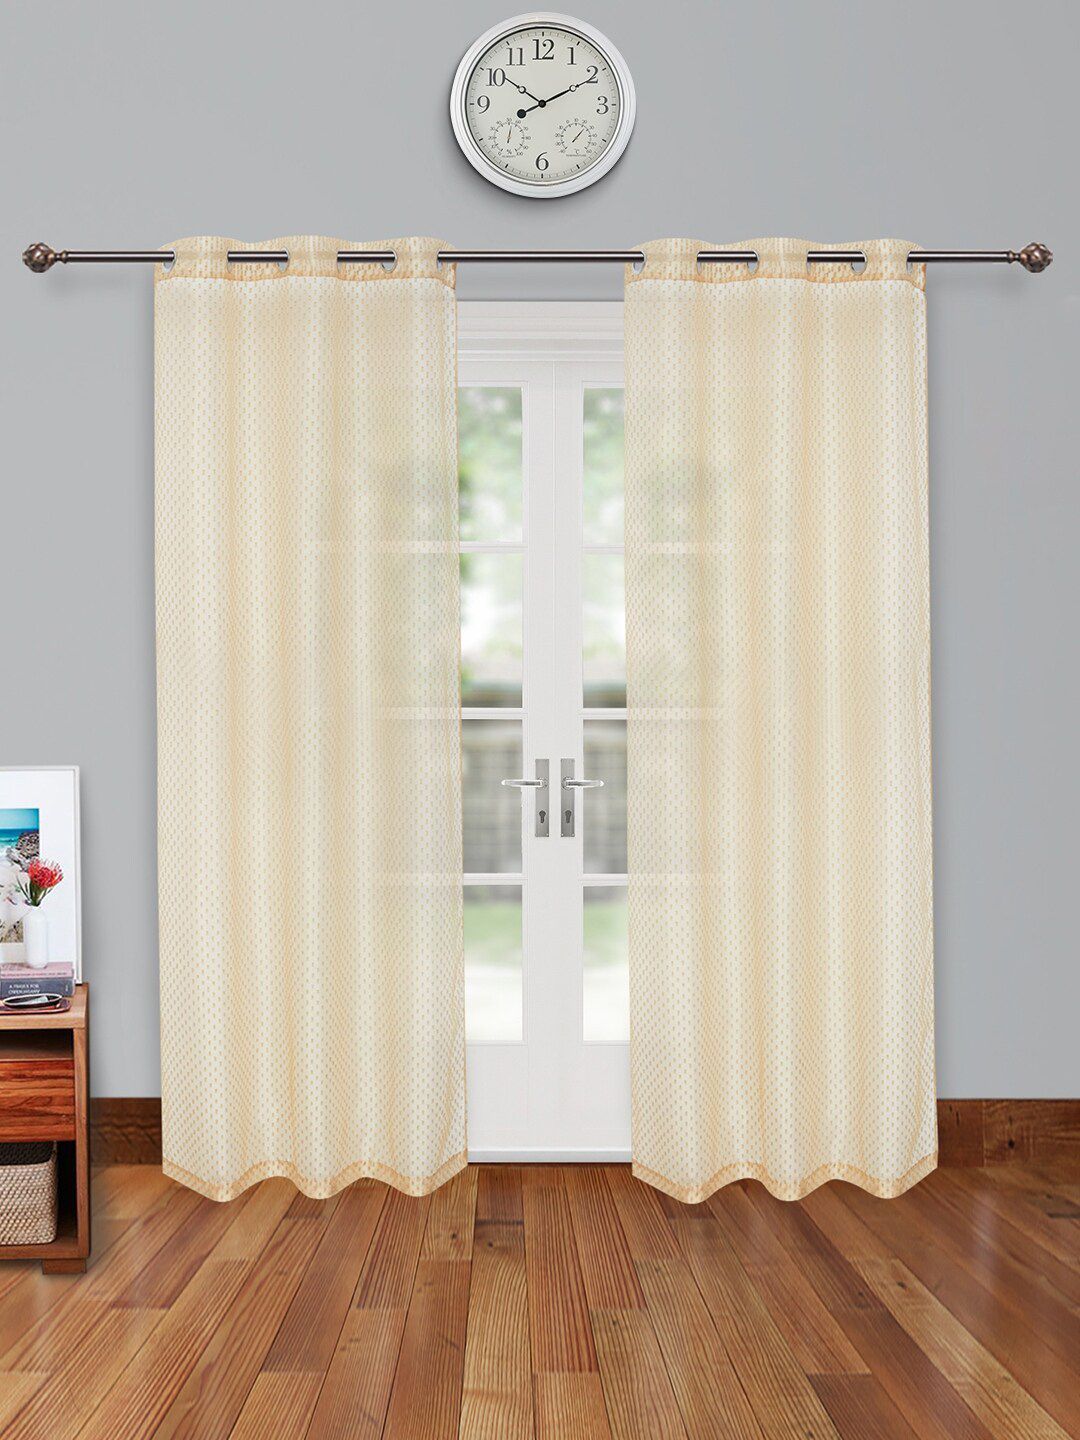 HomeTown Set of 2 Gold-Toned Sheer Door Curtain Price in India